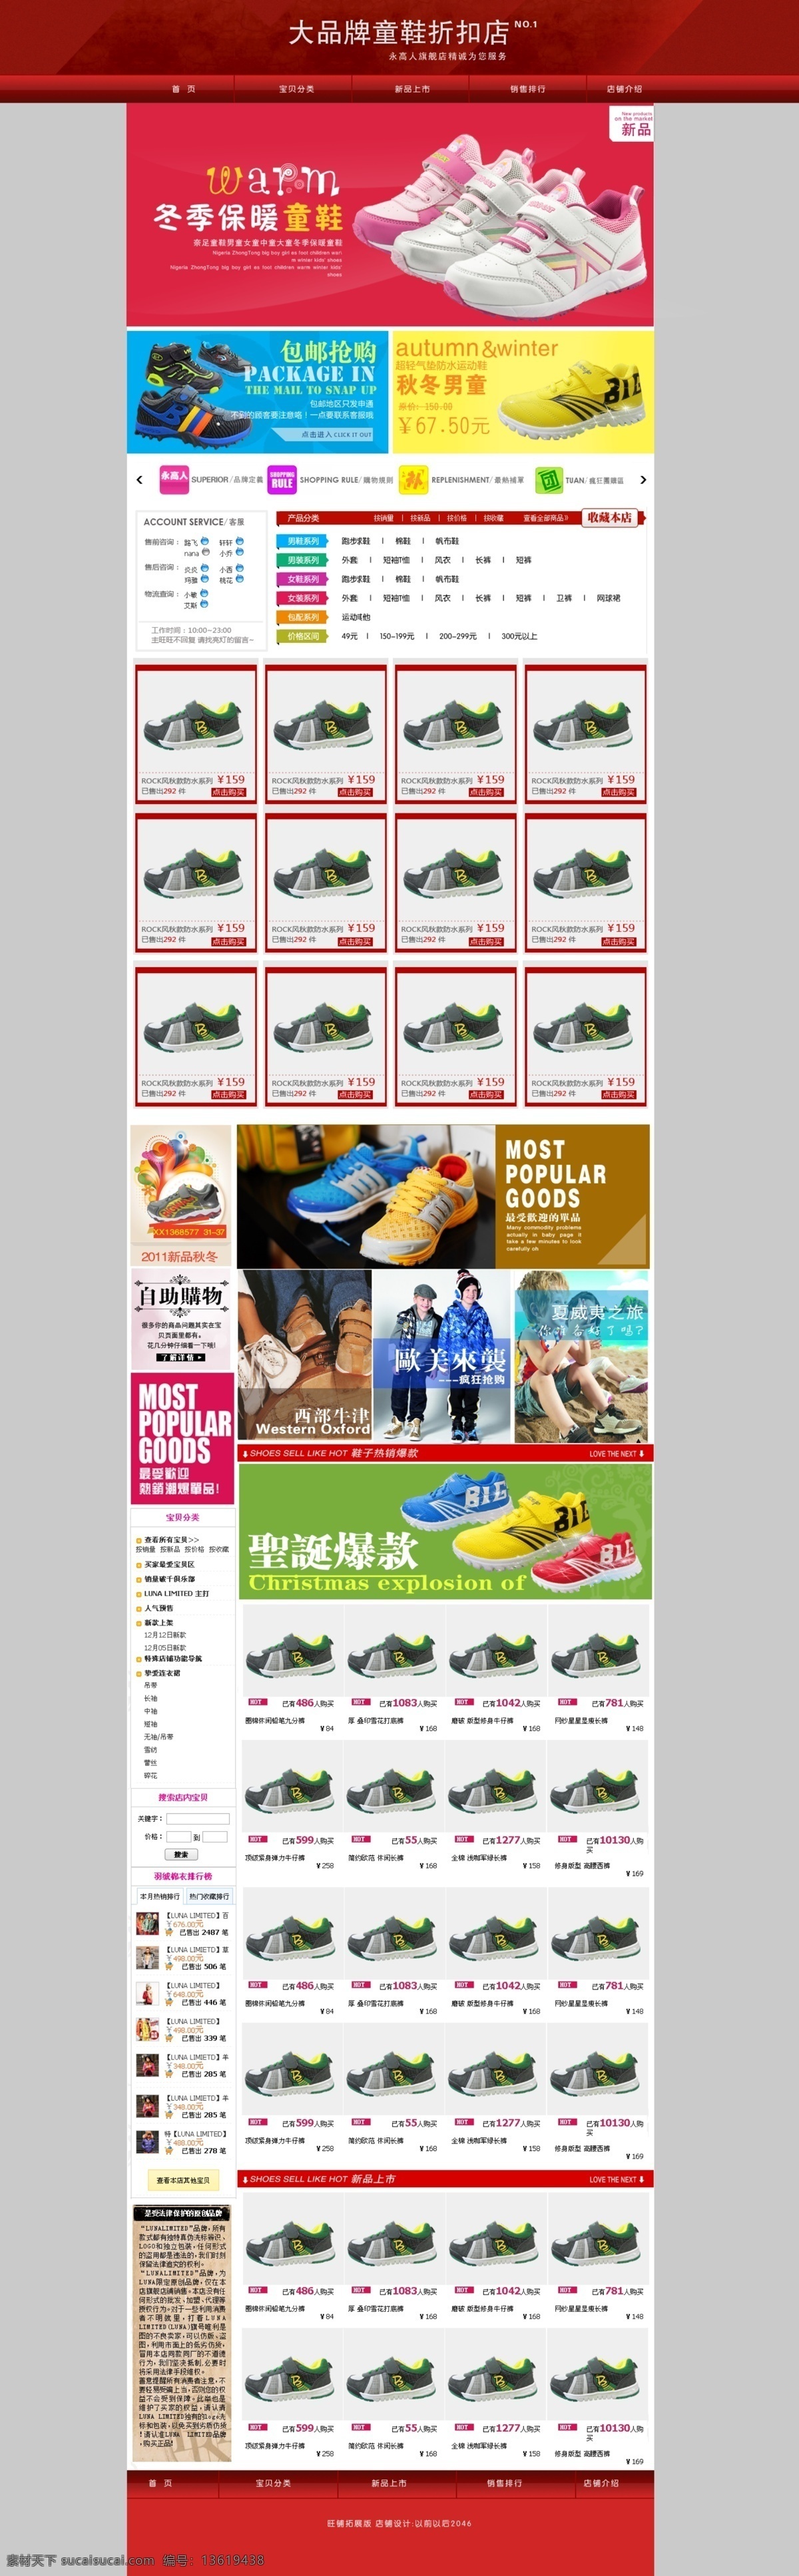 儿童鞋子海报 促销海报 psd源文件 红色